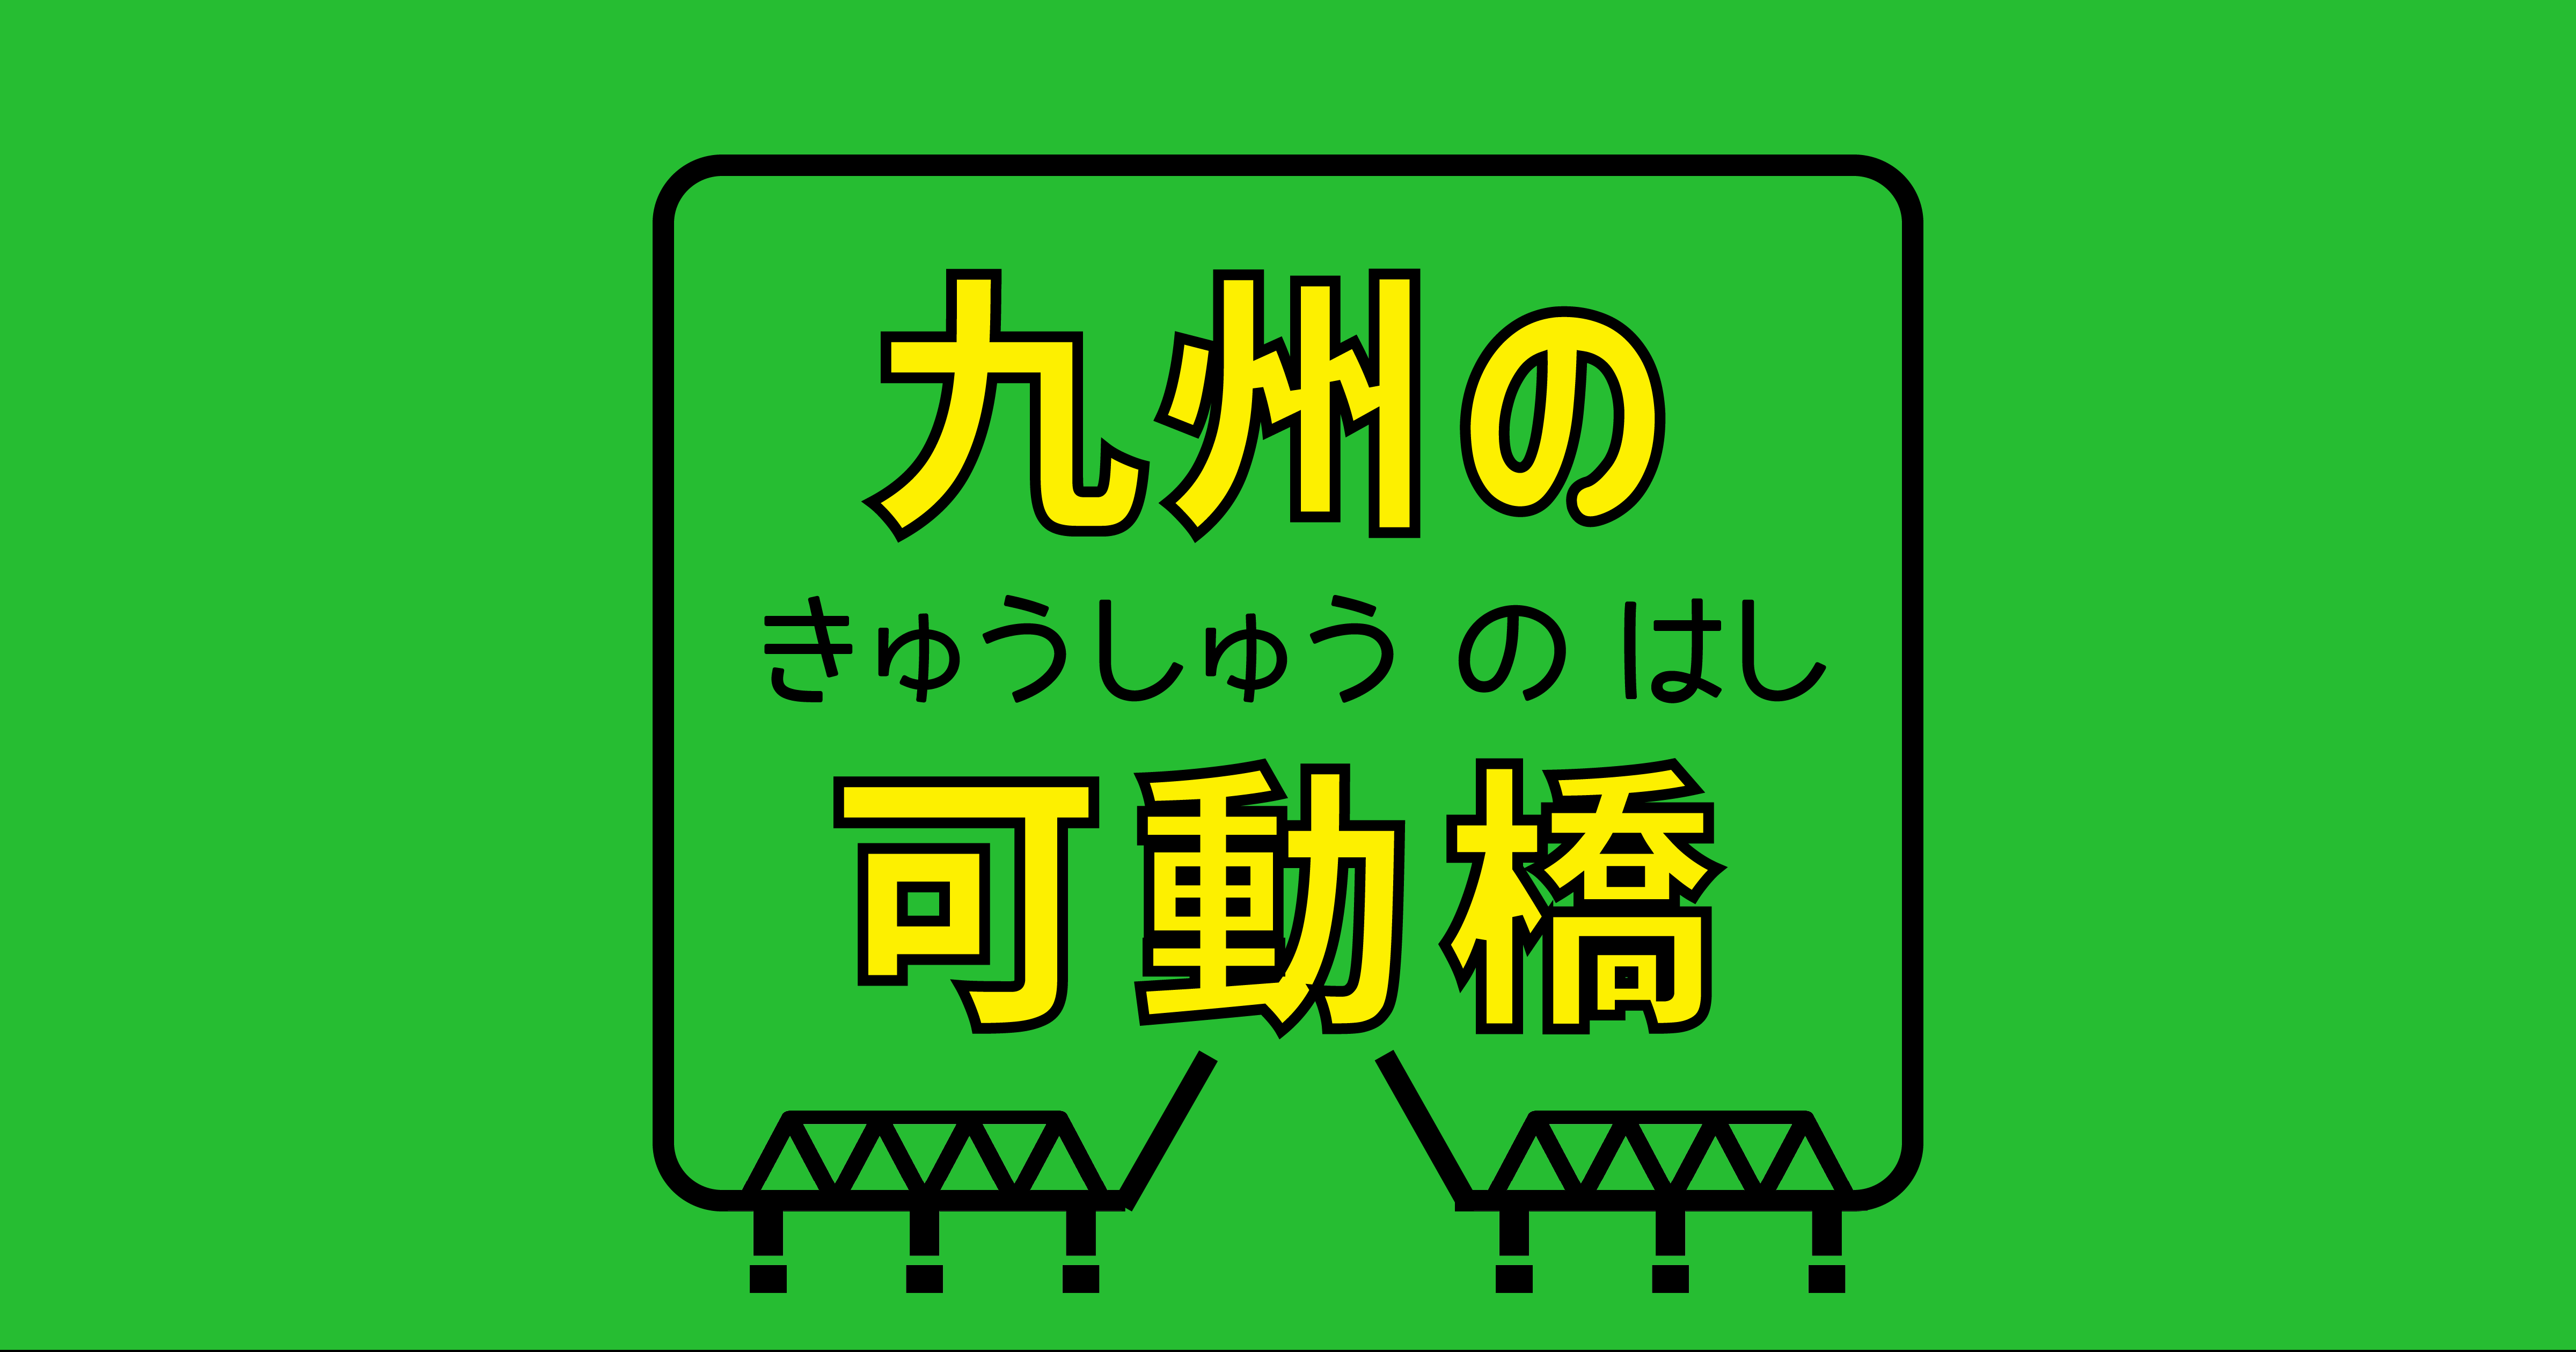 九州の可動橋